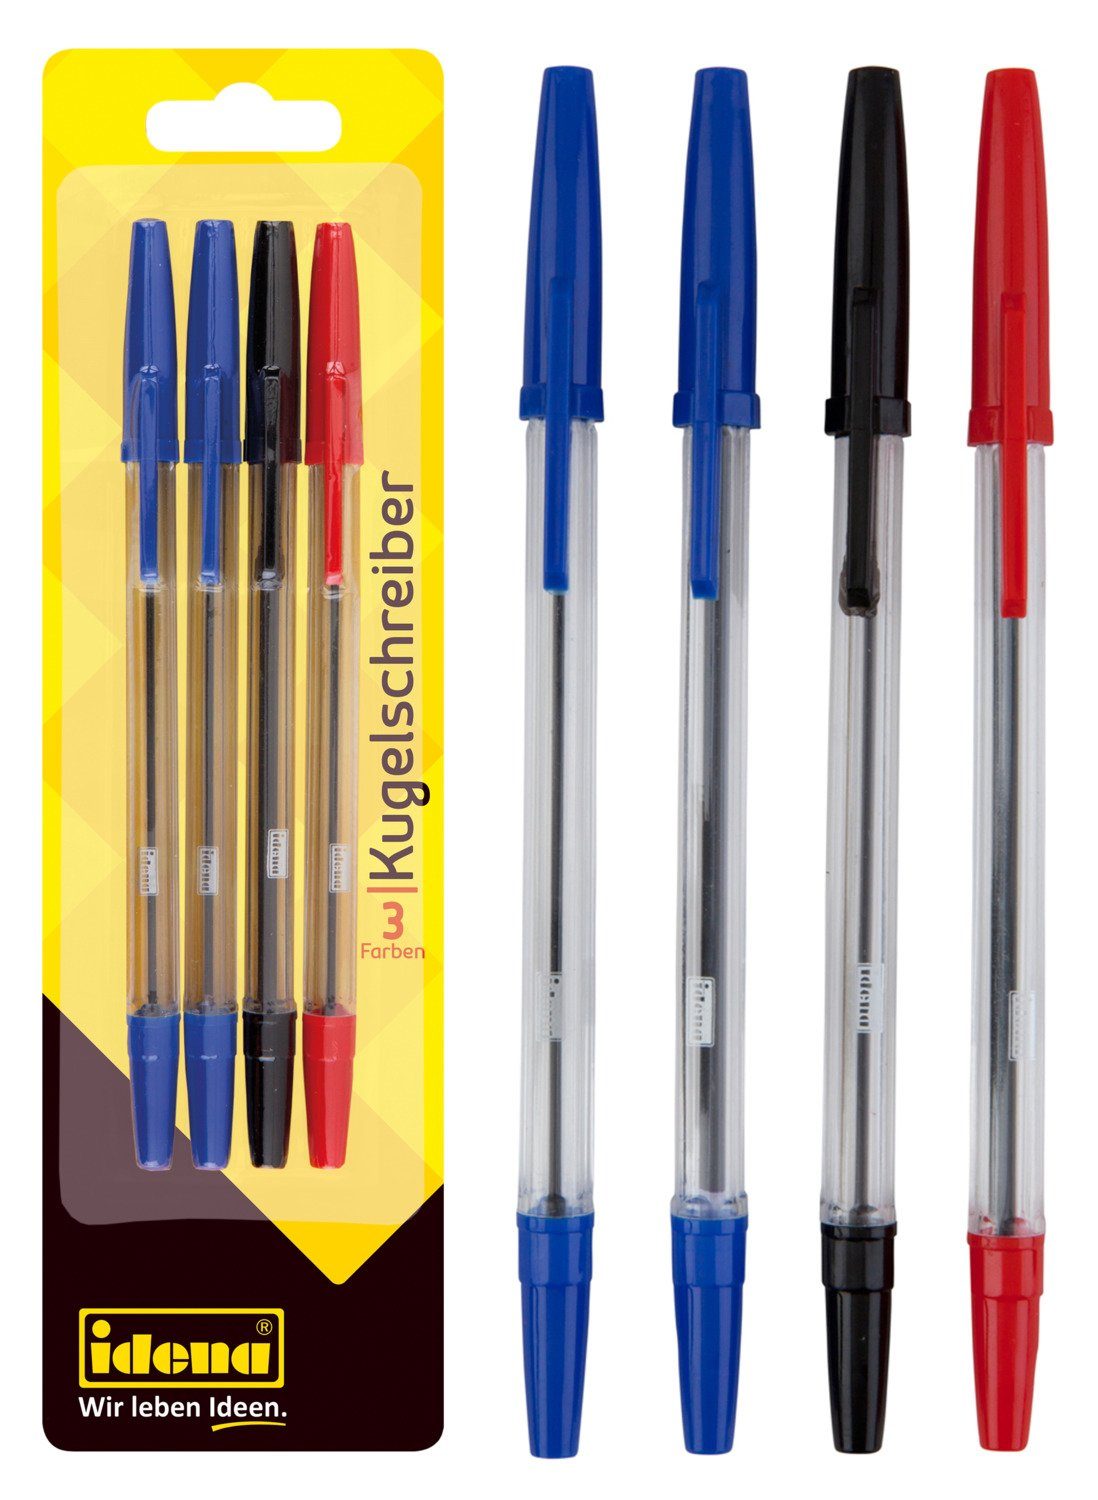 Idena Kugelschreiber Idena 512488 - Kugelschreiber, 3 Schreibfarben, sortiert, 4 Stück